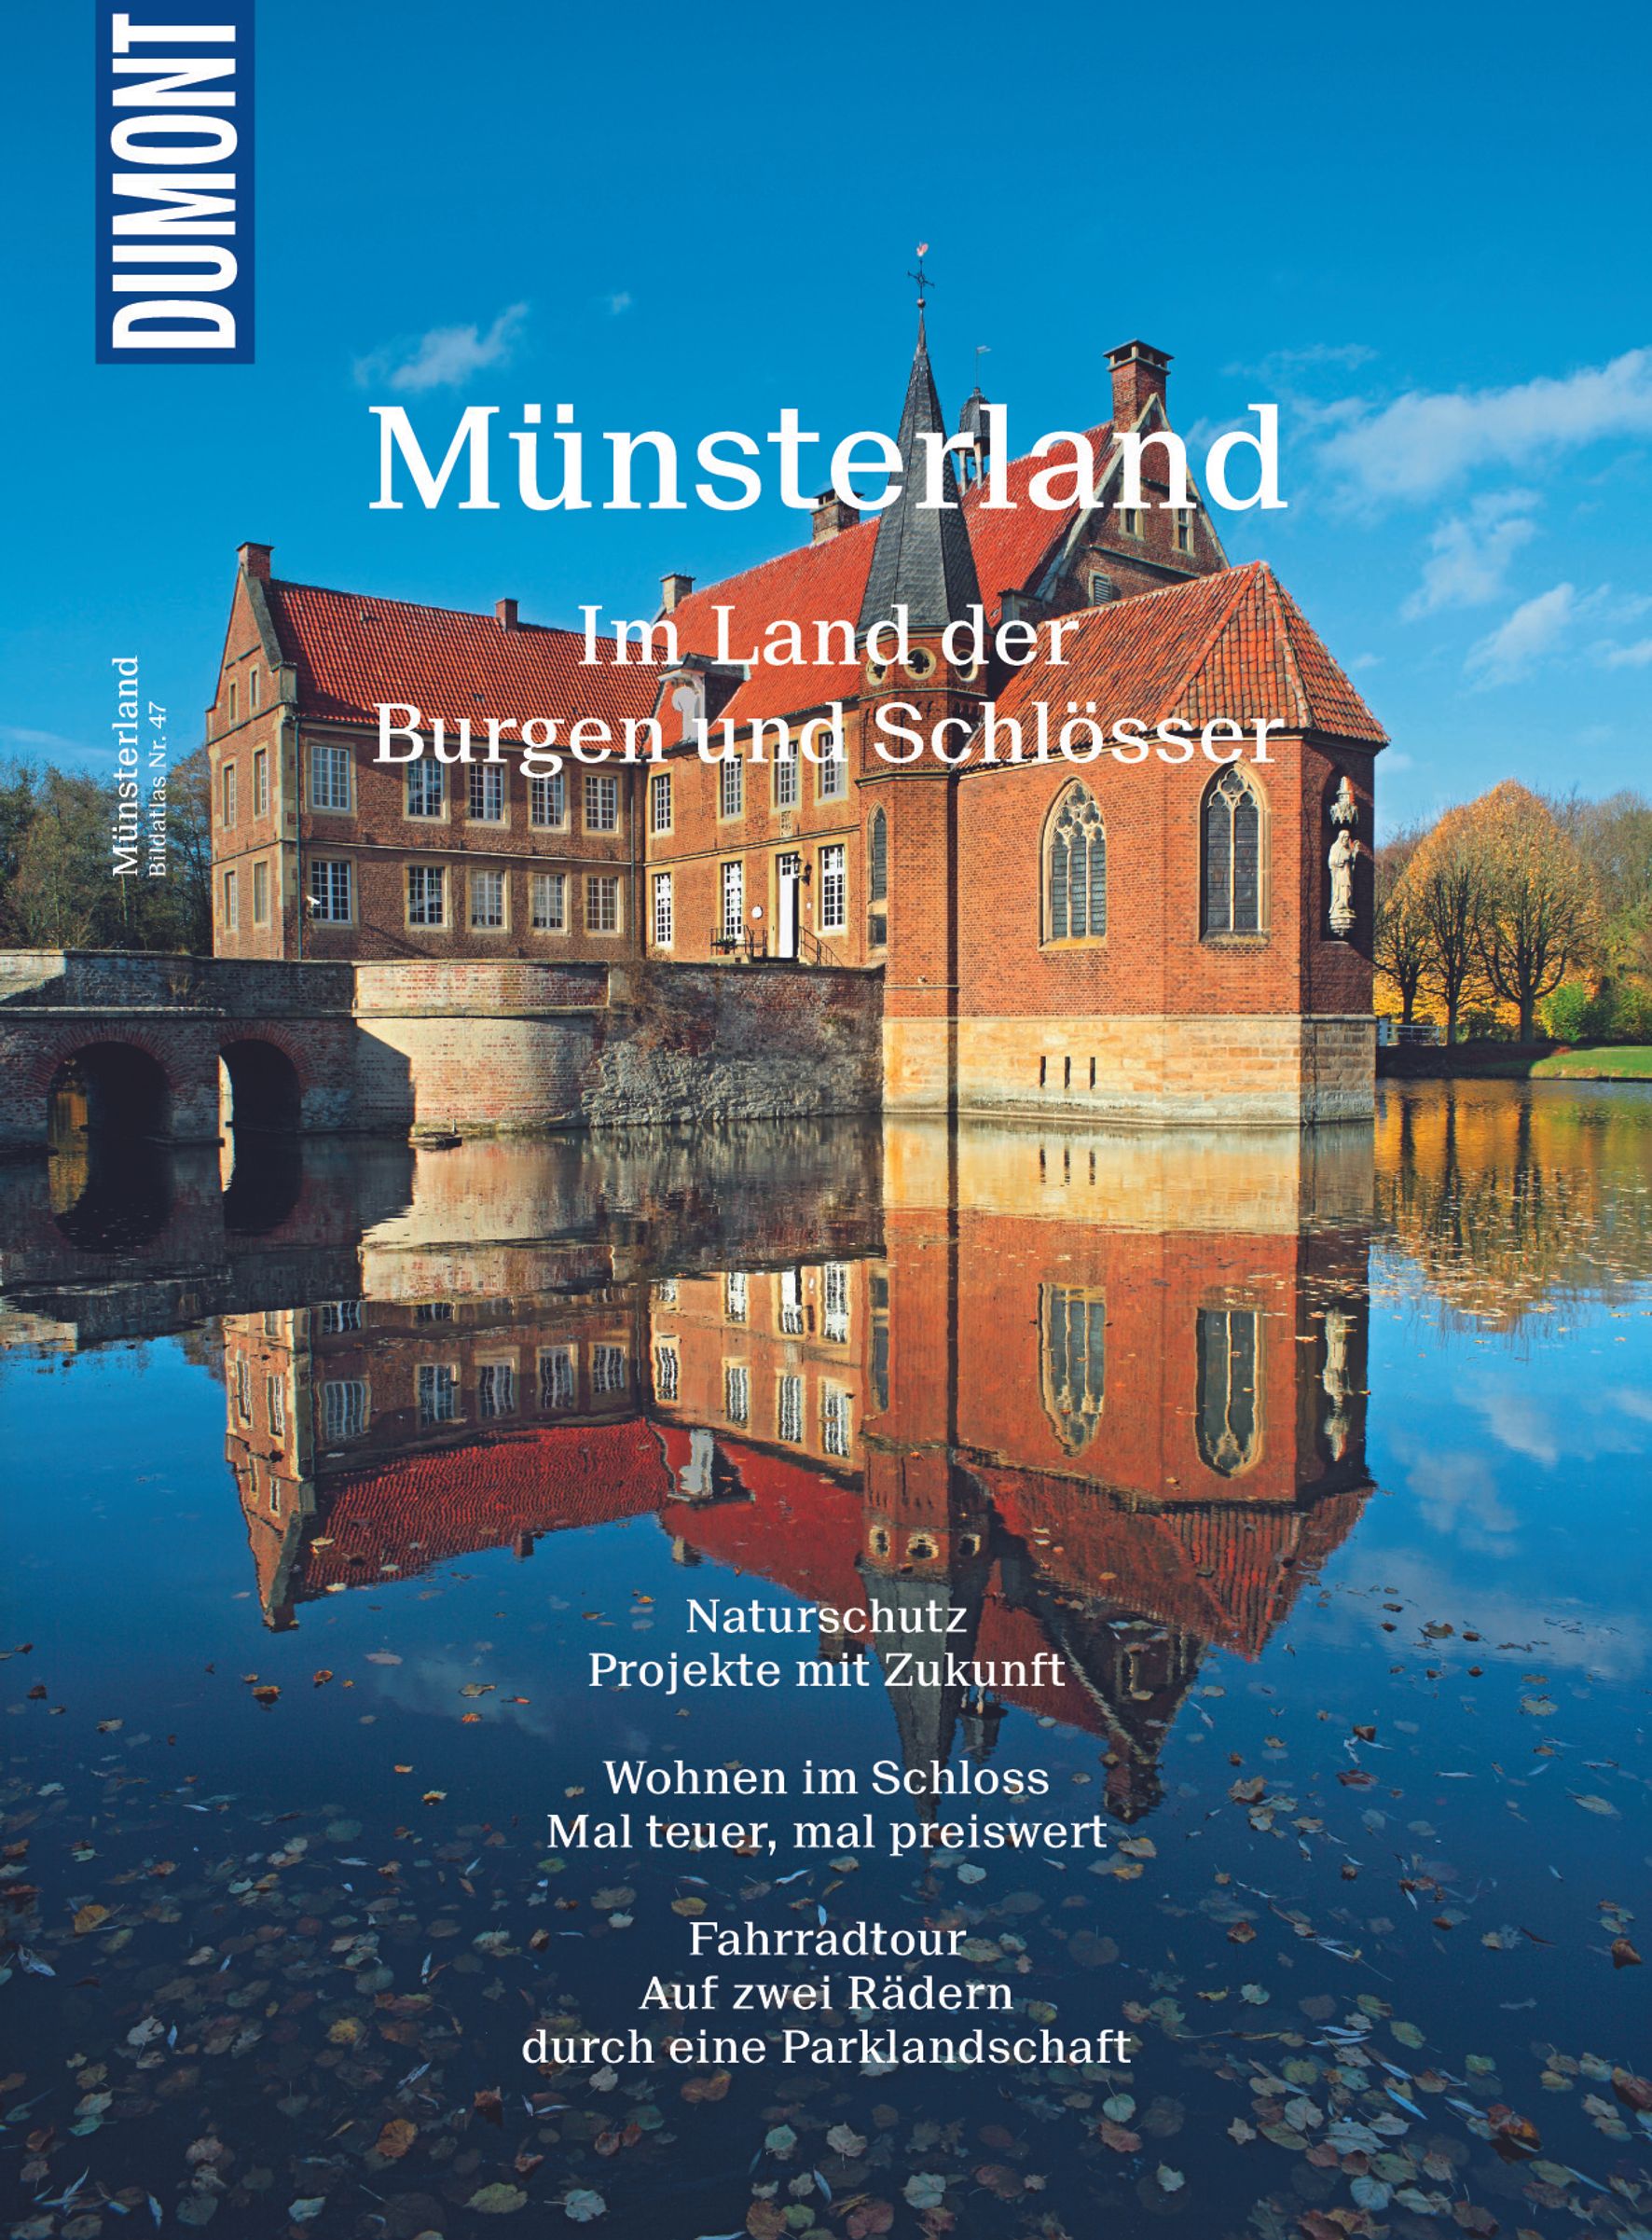 MAIRDUMONT Münsterland (eBook)